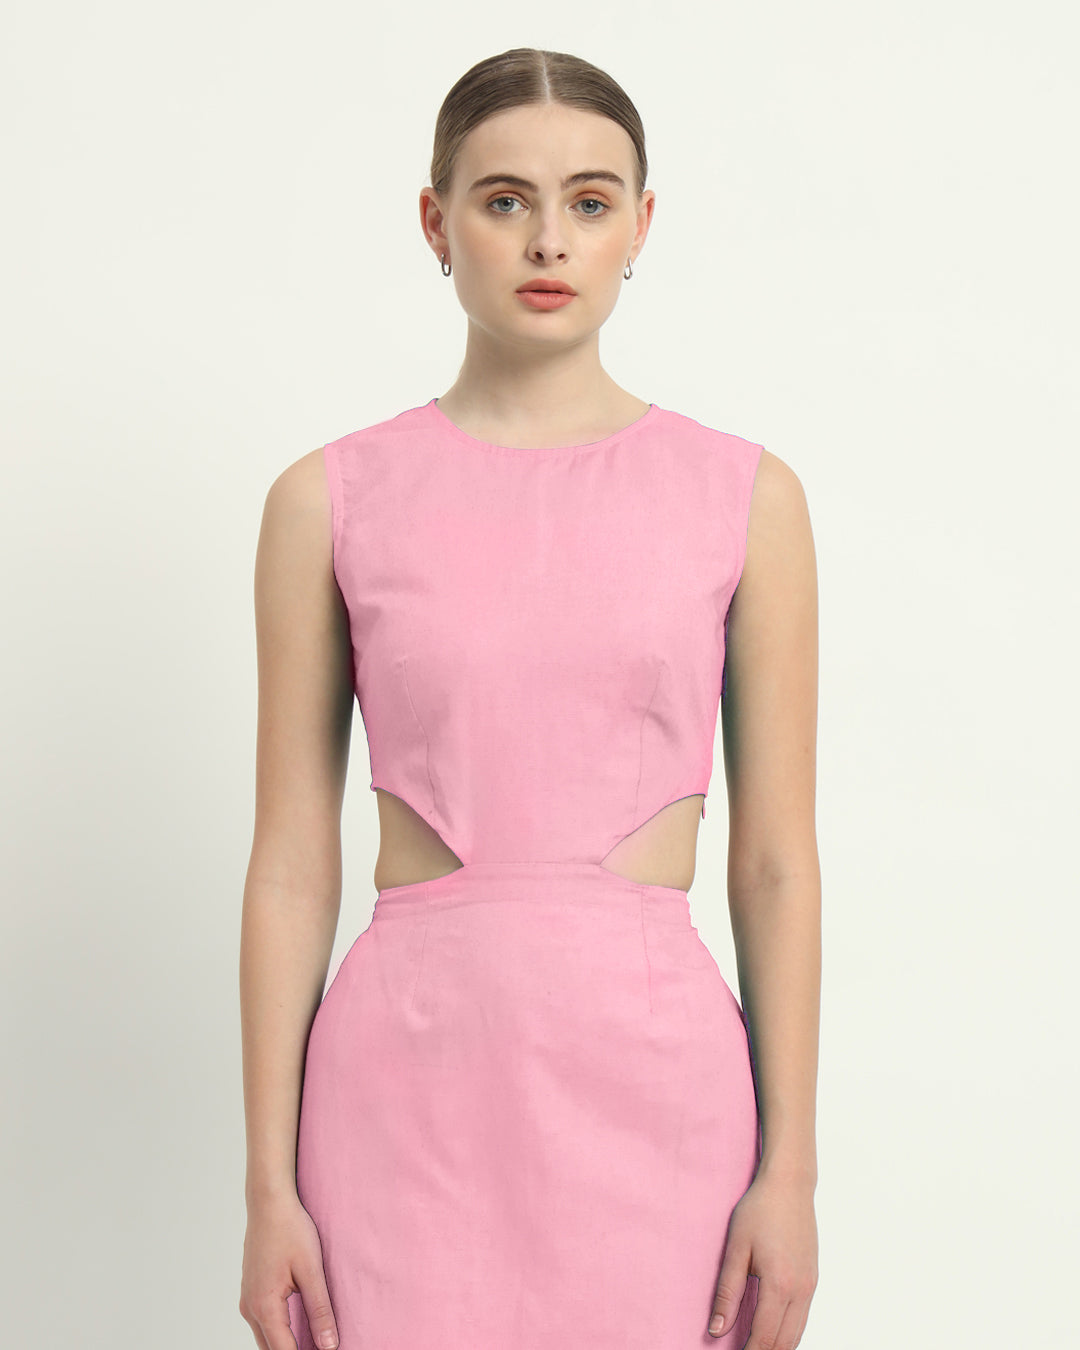 The Fondant Pink Livingston Cotton Dress